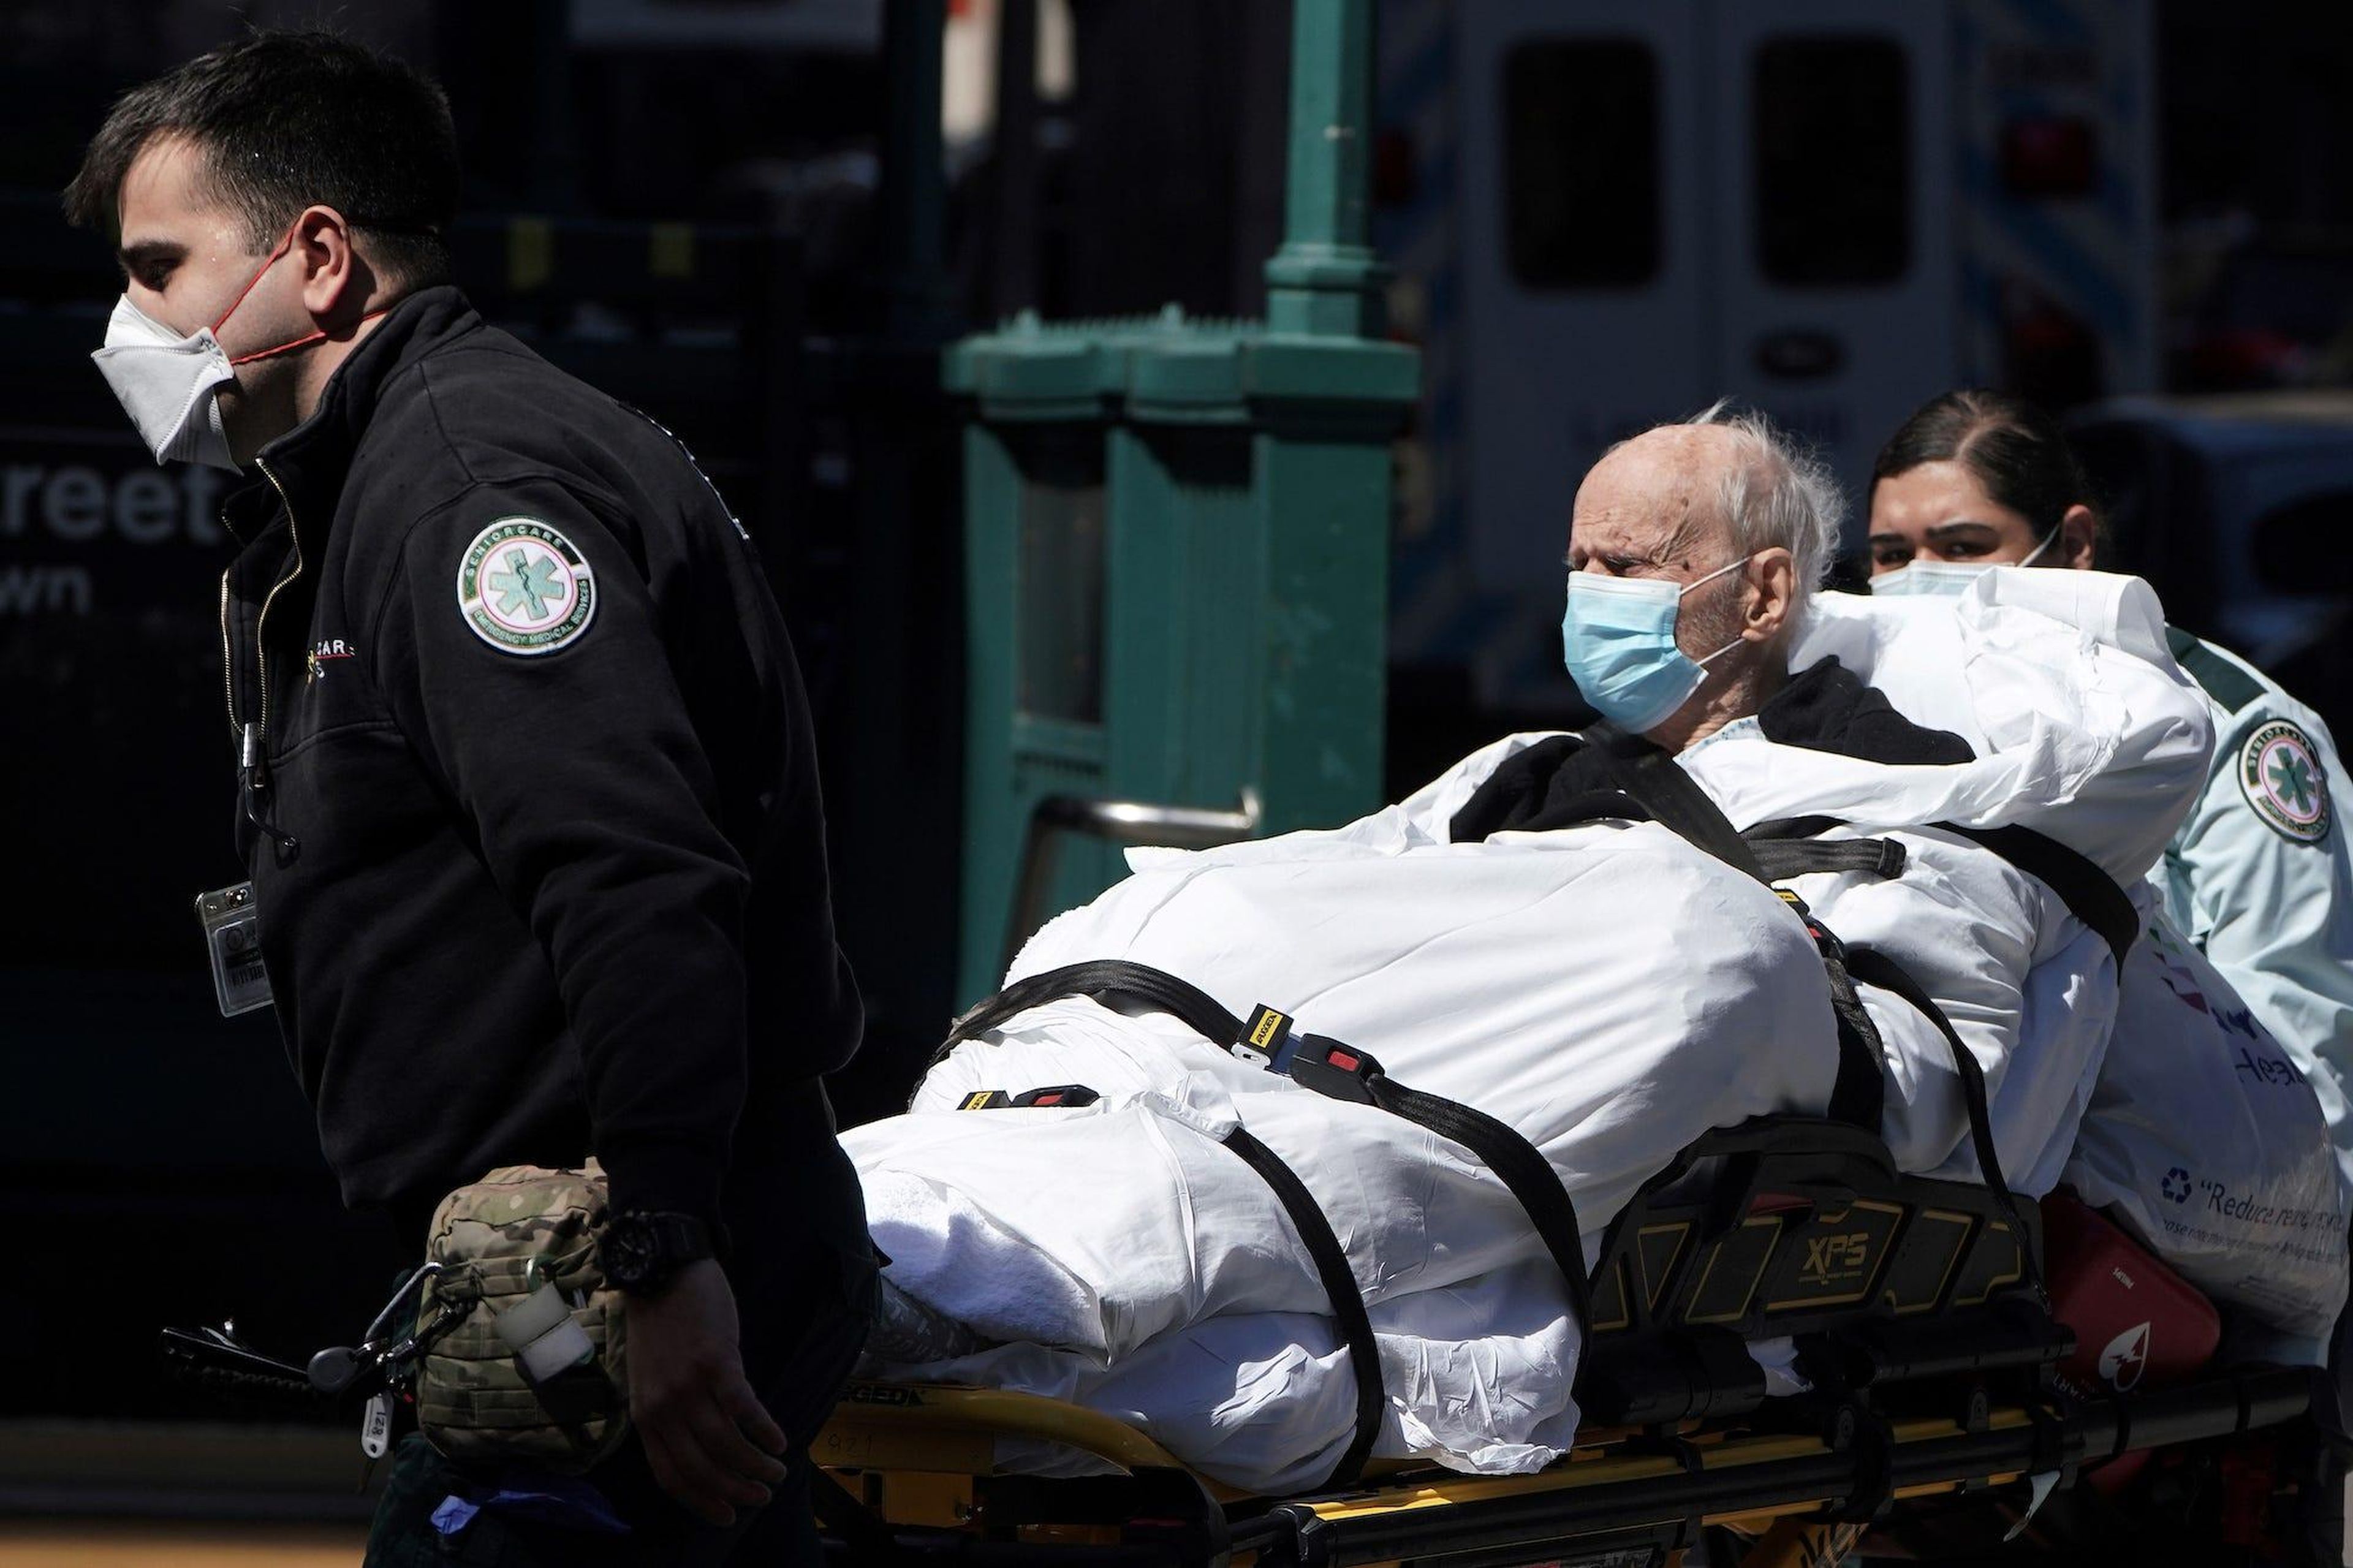 Llevan a un paciente en camilla a una ambulancia en Nueva York el 27 de marzo.